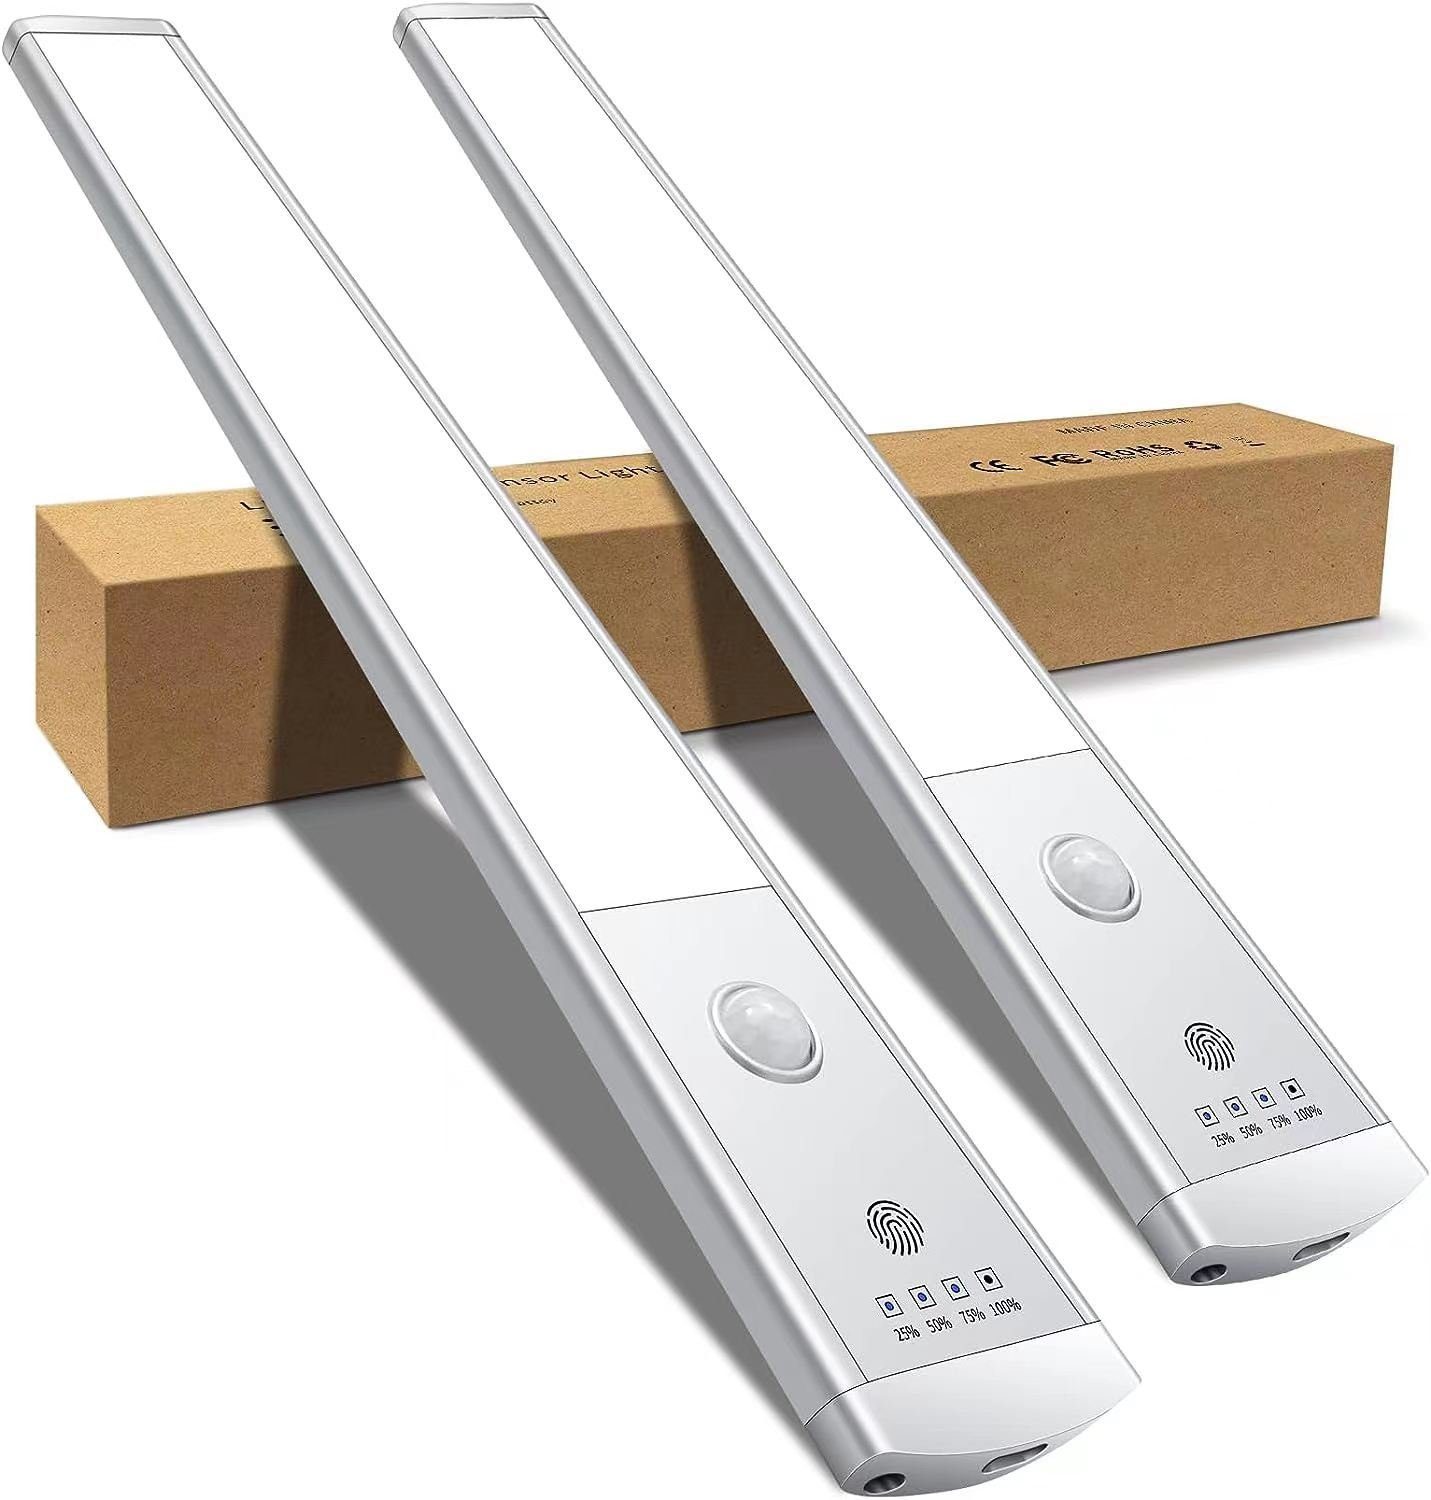 autolock LED Unterbauleuchte 2 Stück LED Schrankbeleuchtung mit Bewegungsmelder, Kabellose LED, Unterbauleuchte,USB Wiederaufladba Schranklicht,Tragbares Weiß